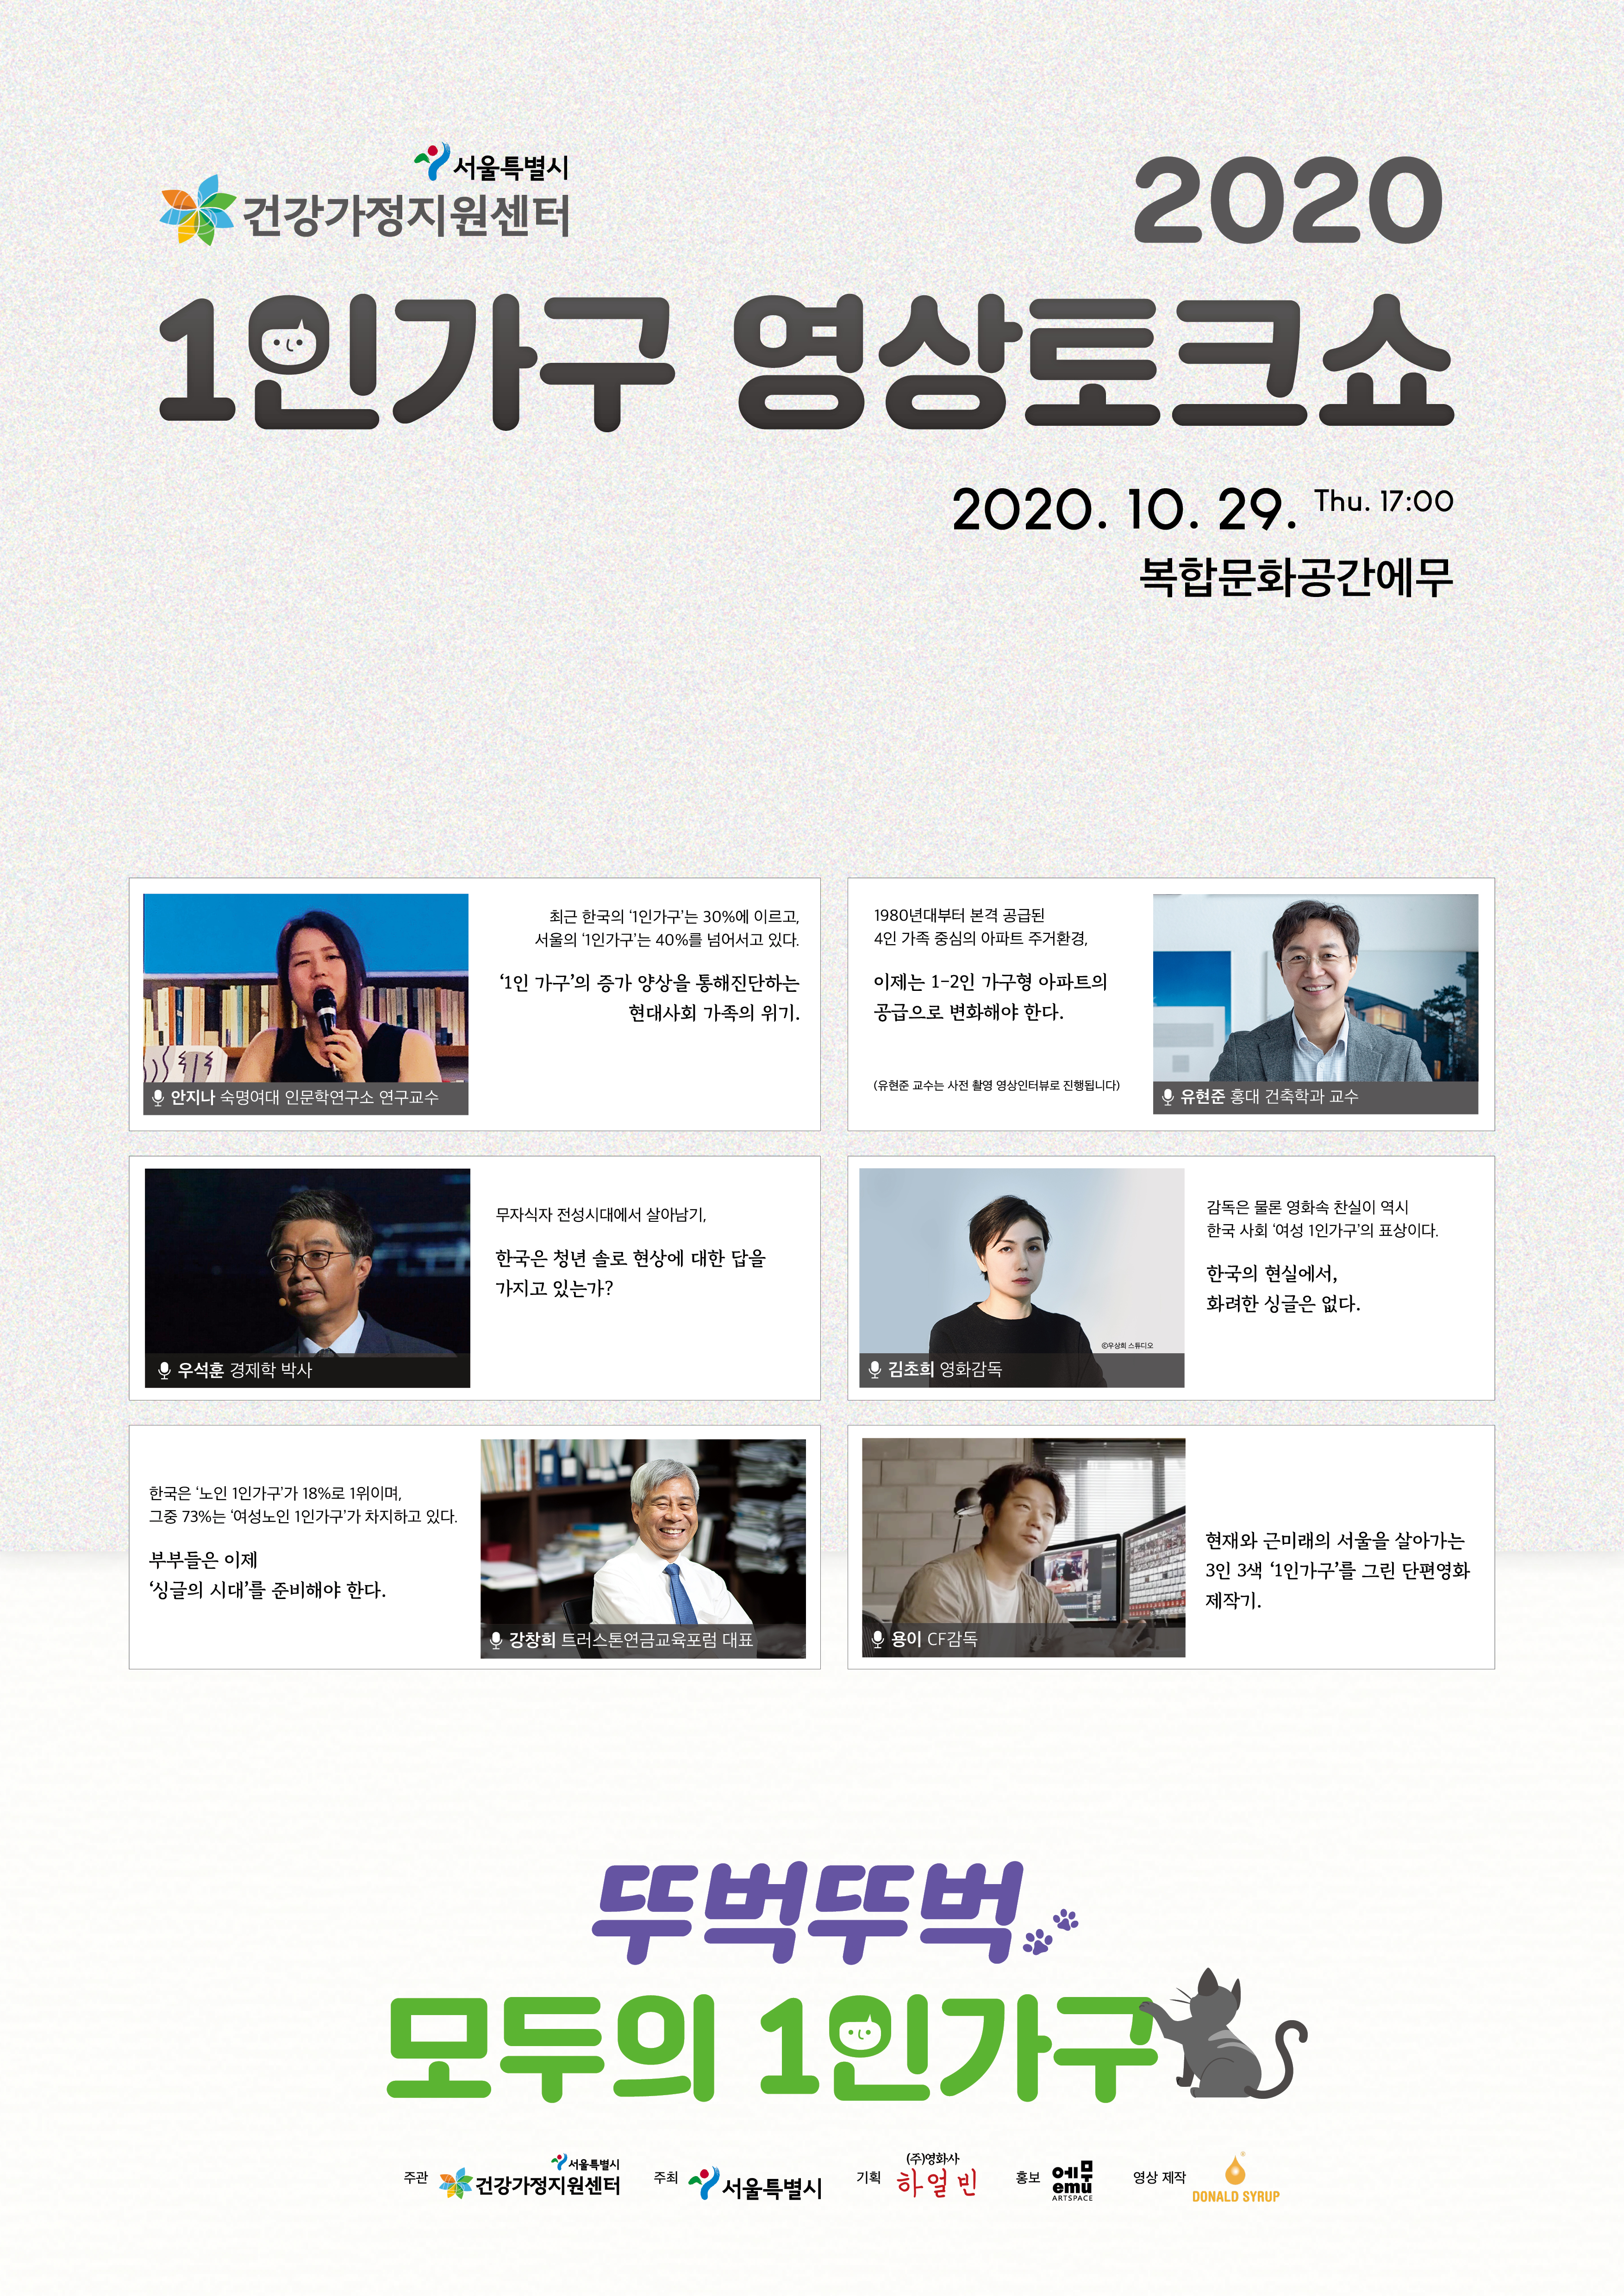 [보도자료] 서울시 1인가구 증가에 ‘모두의 1인가구' 영상토크쇼 개최